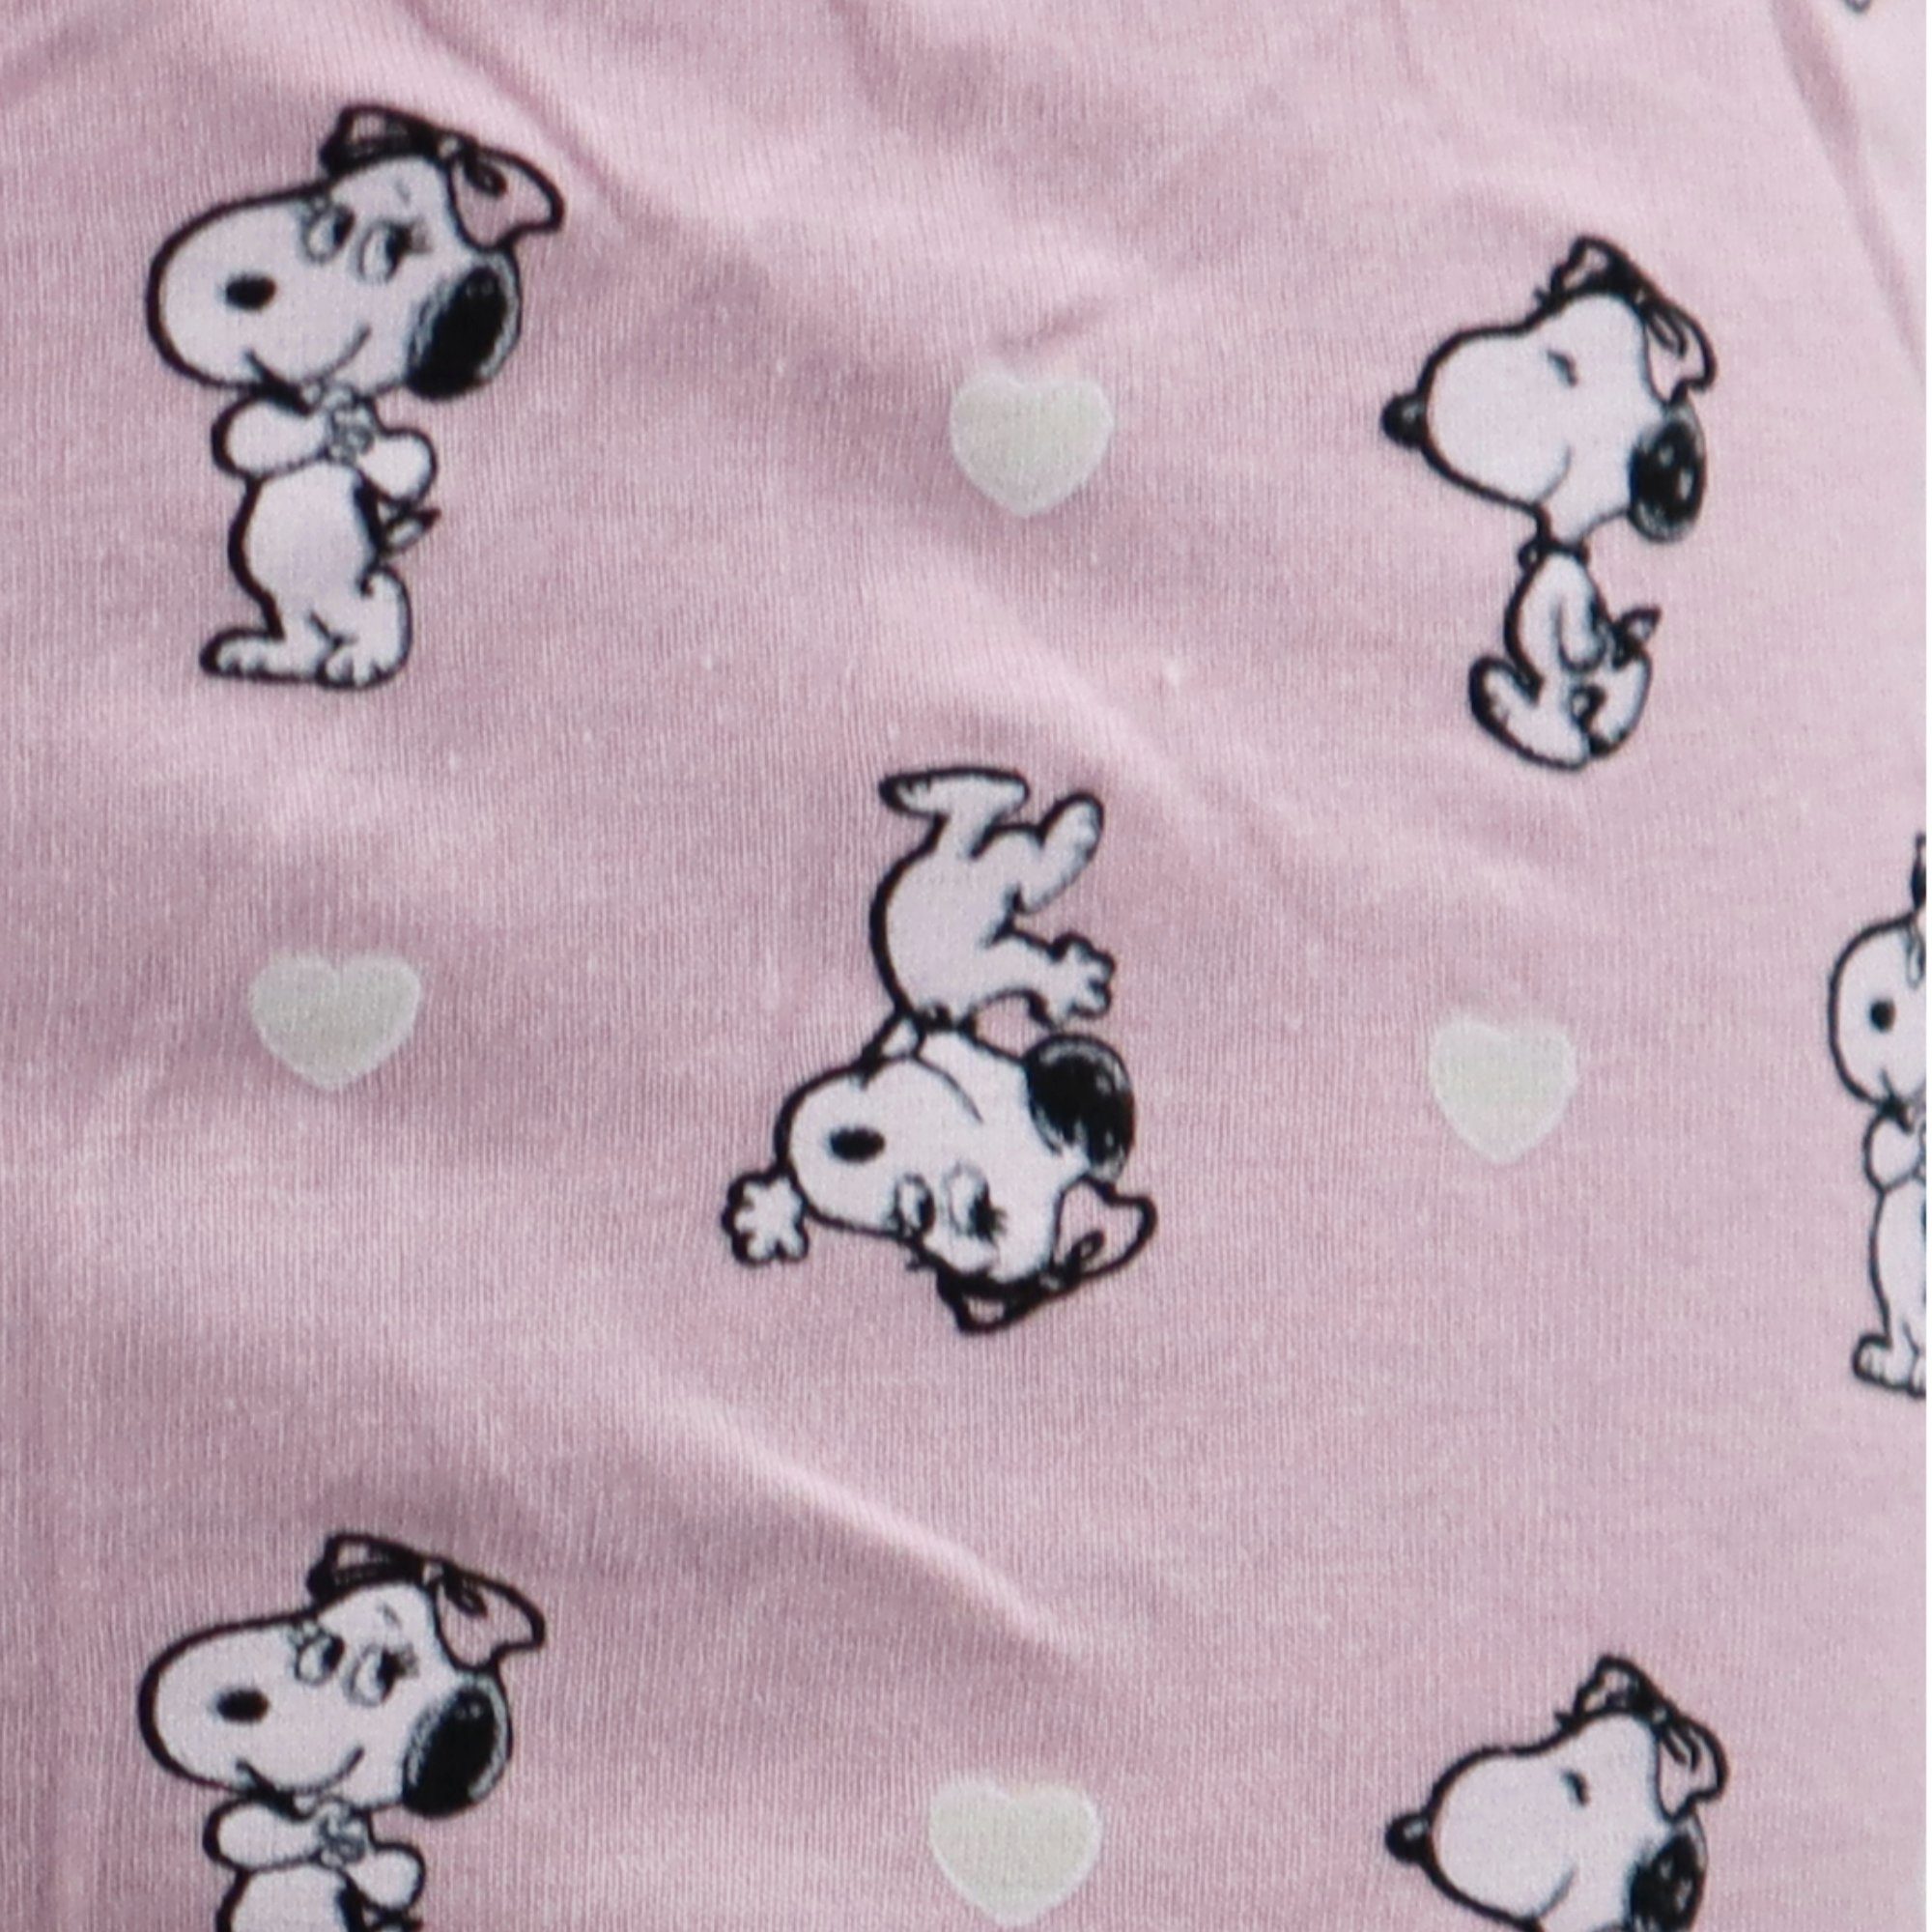 EplusM Schlafanzug Peanuts Kinder Mädchen Gr. 92 bis 128 Pyjama